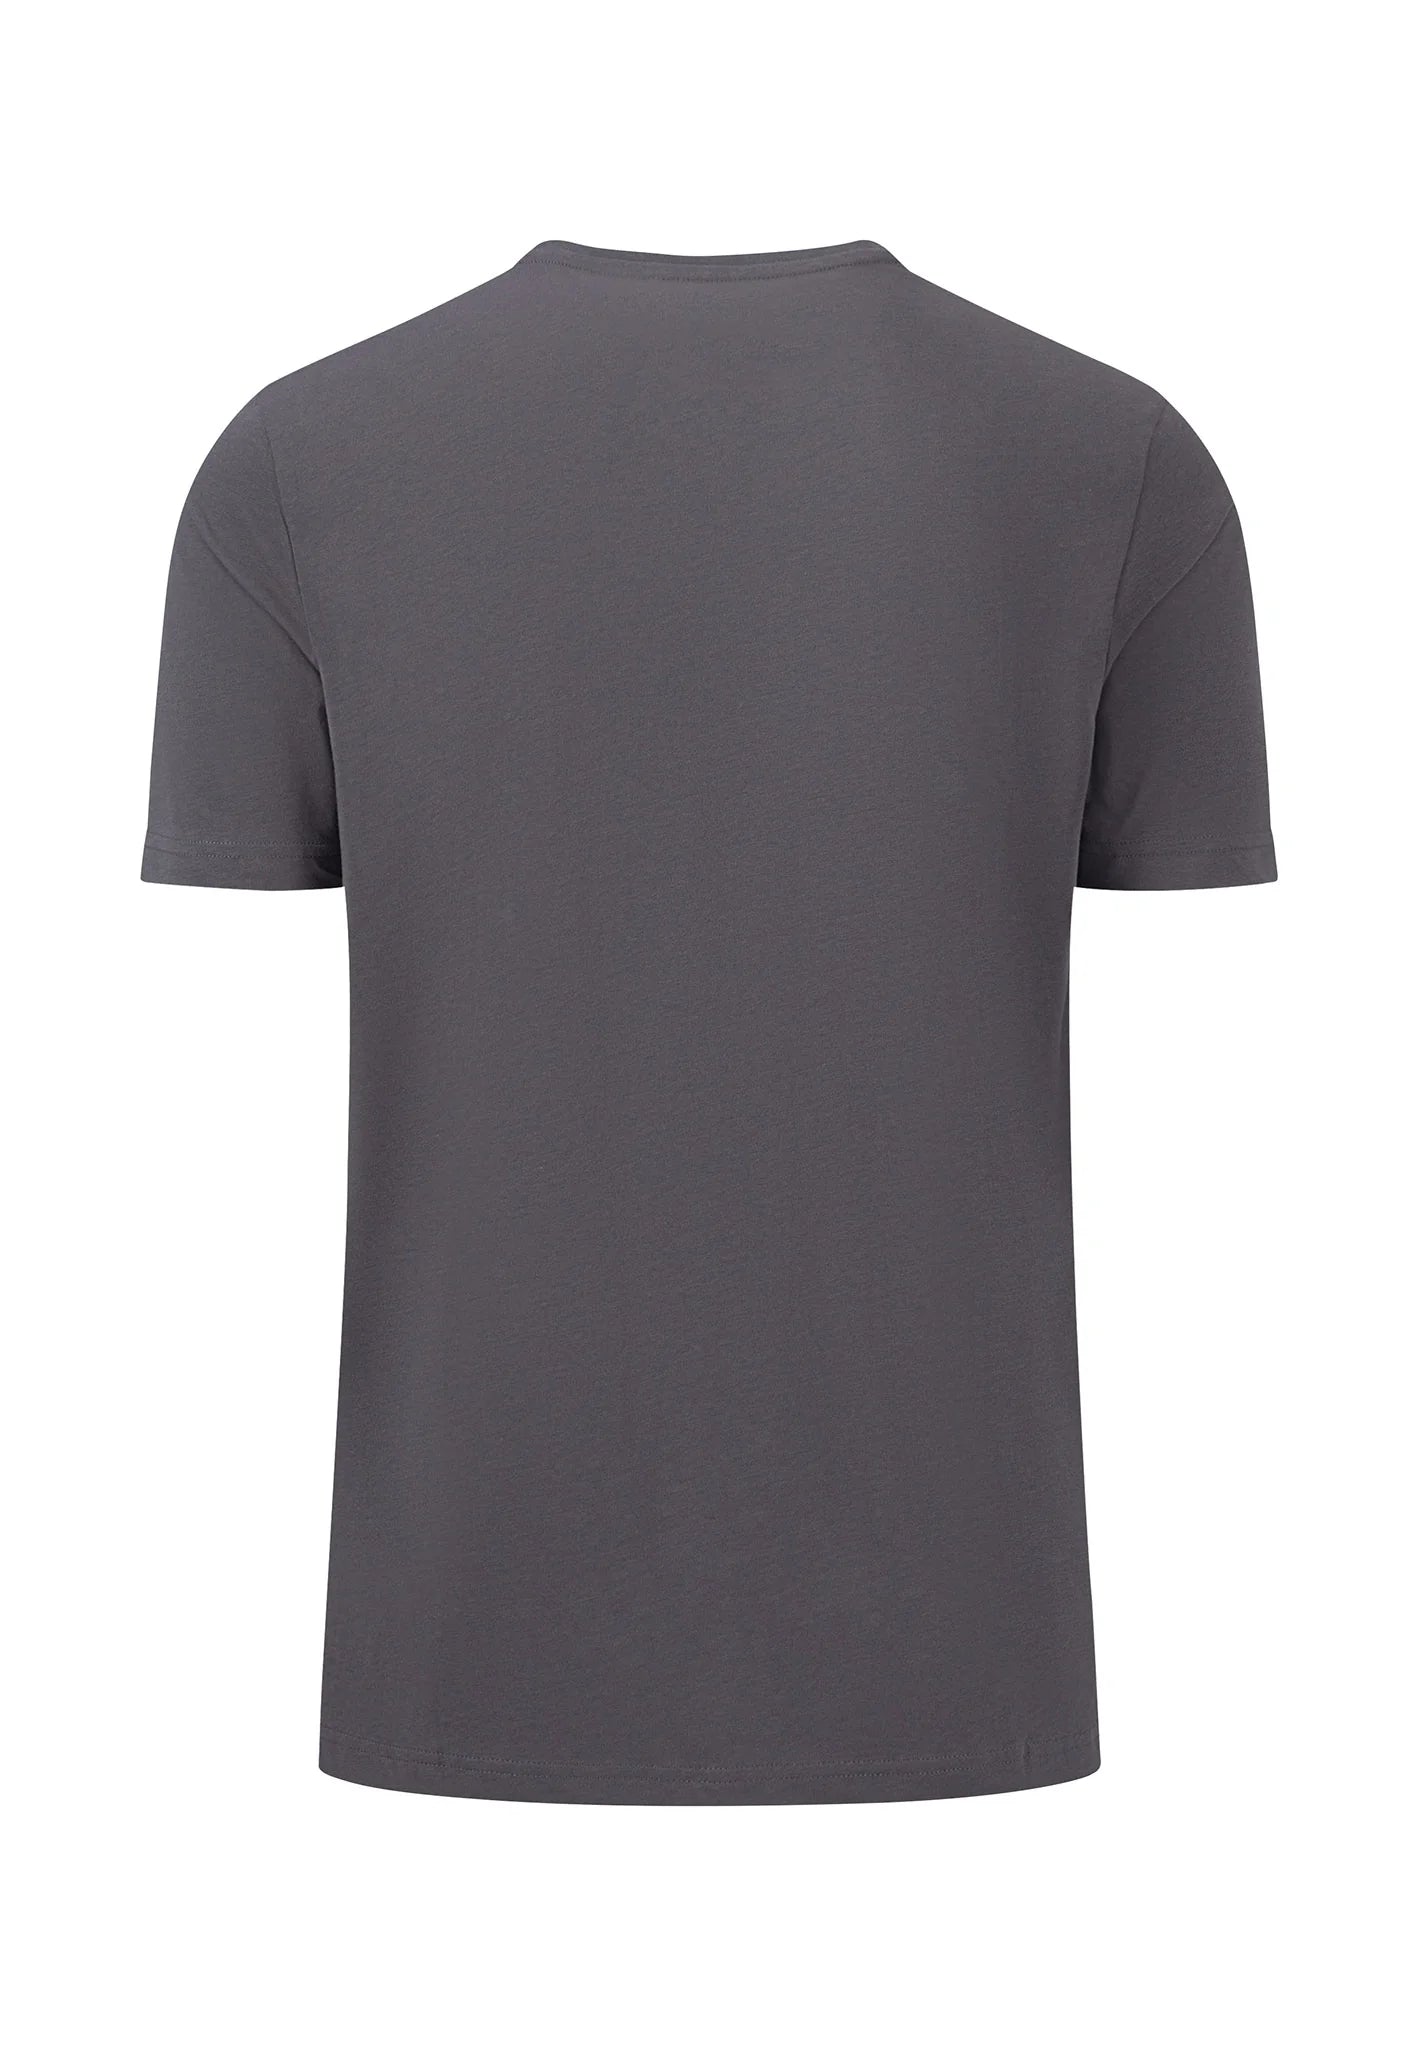 FYNCH HATTON T-Shirt - Men's Round Neck – Asphalt